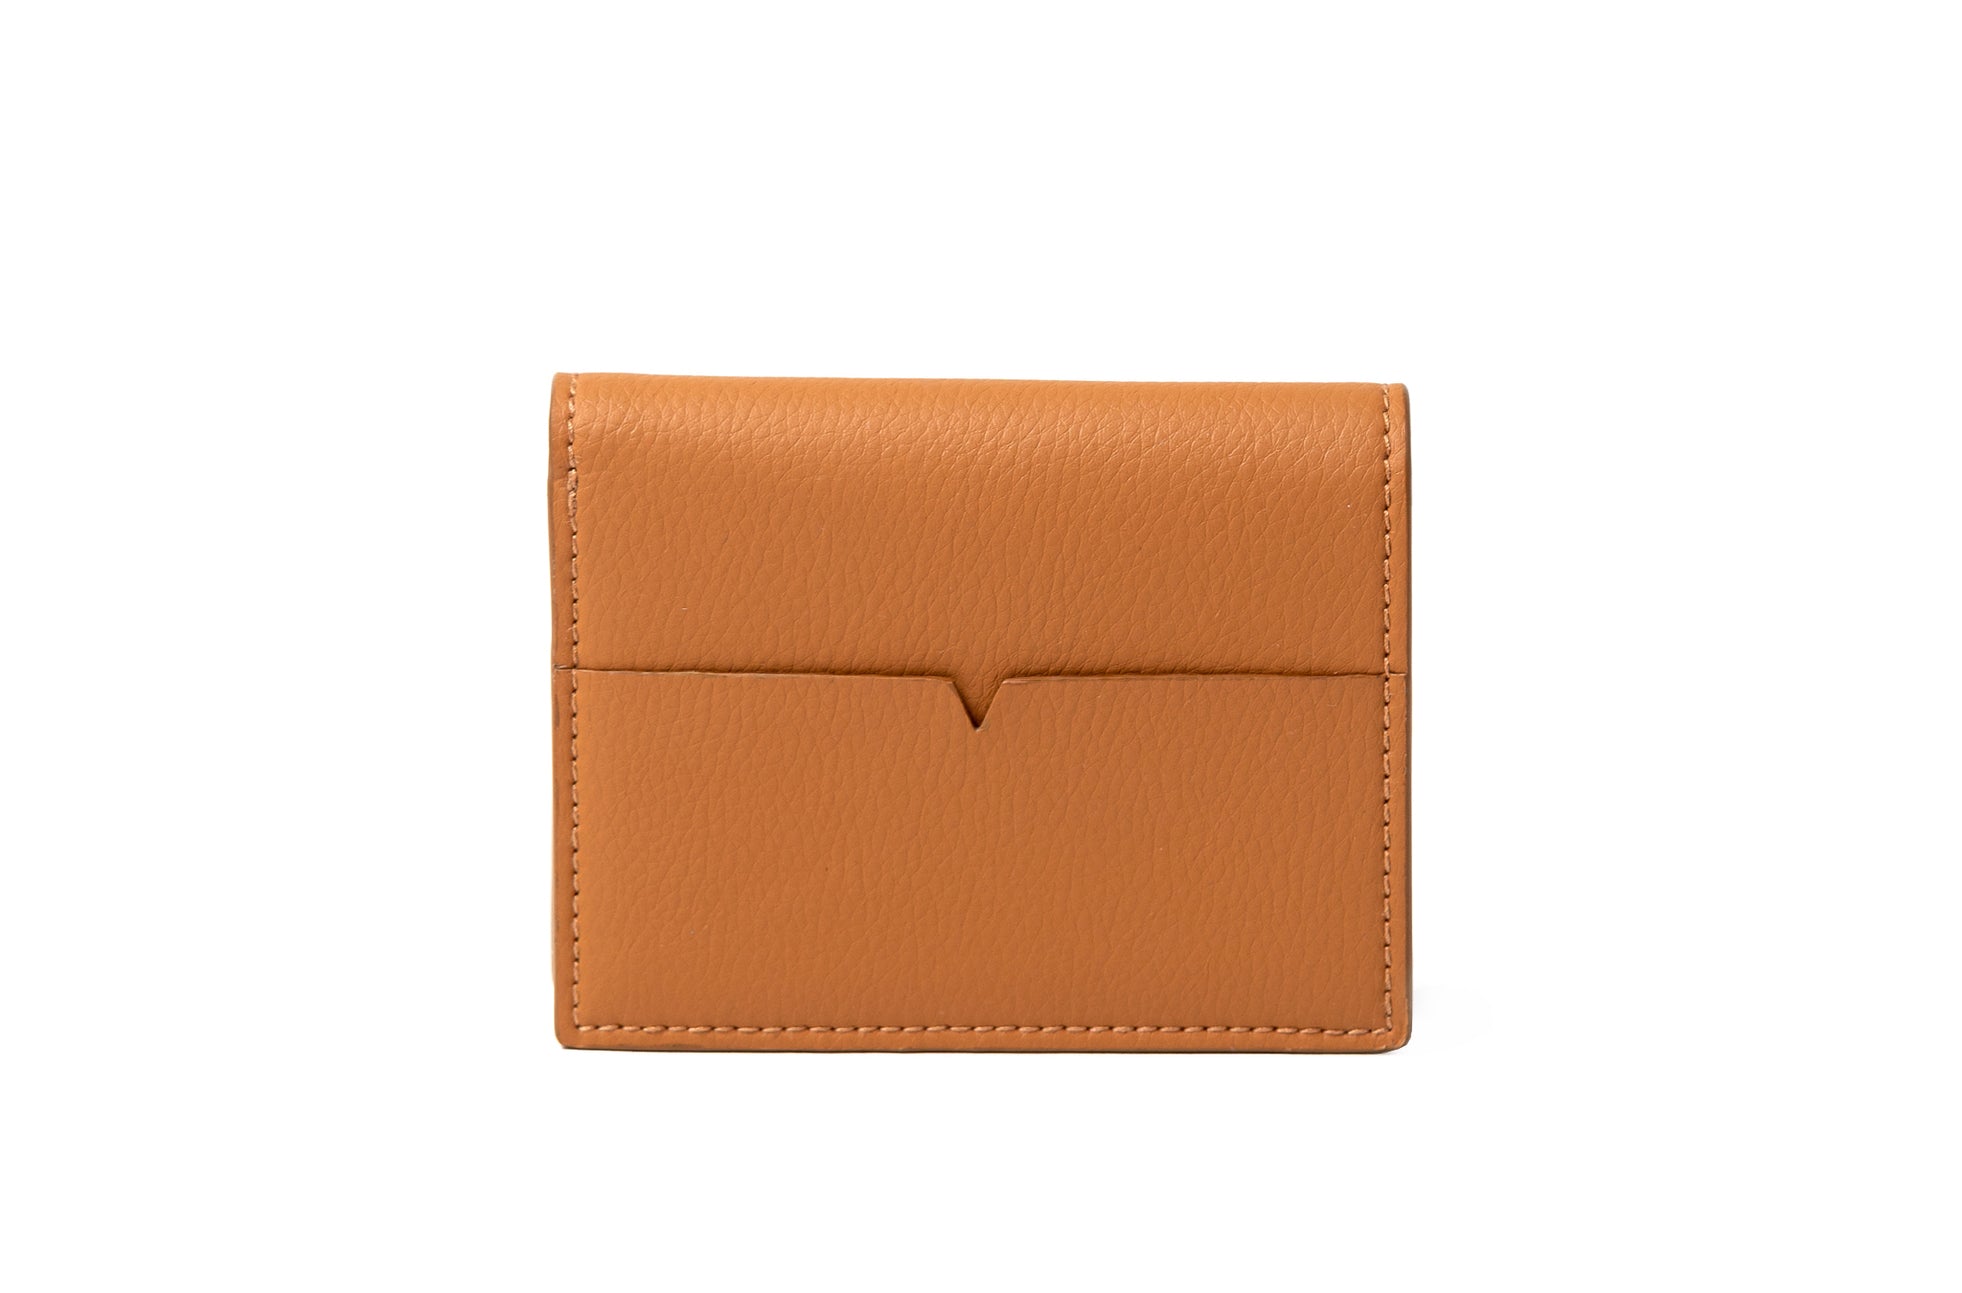 The Fold Wallet in Technik-Leather in Caramel image 1